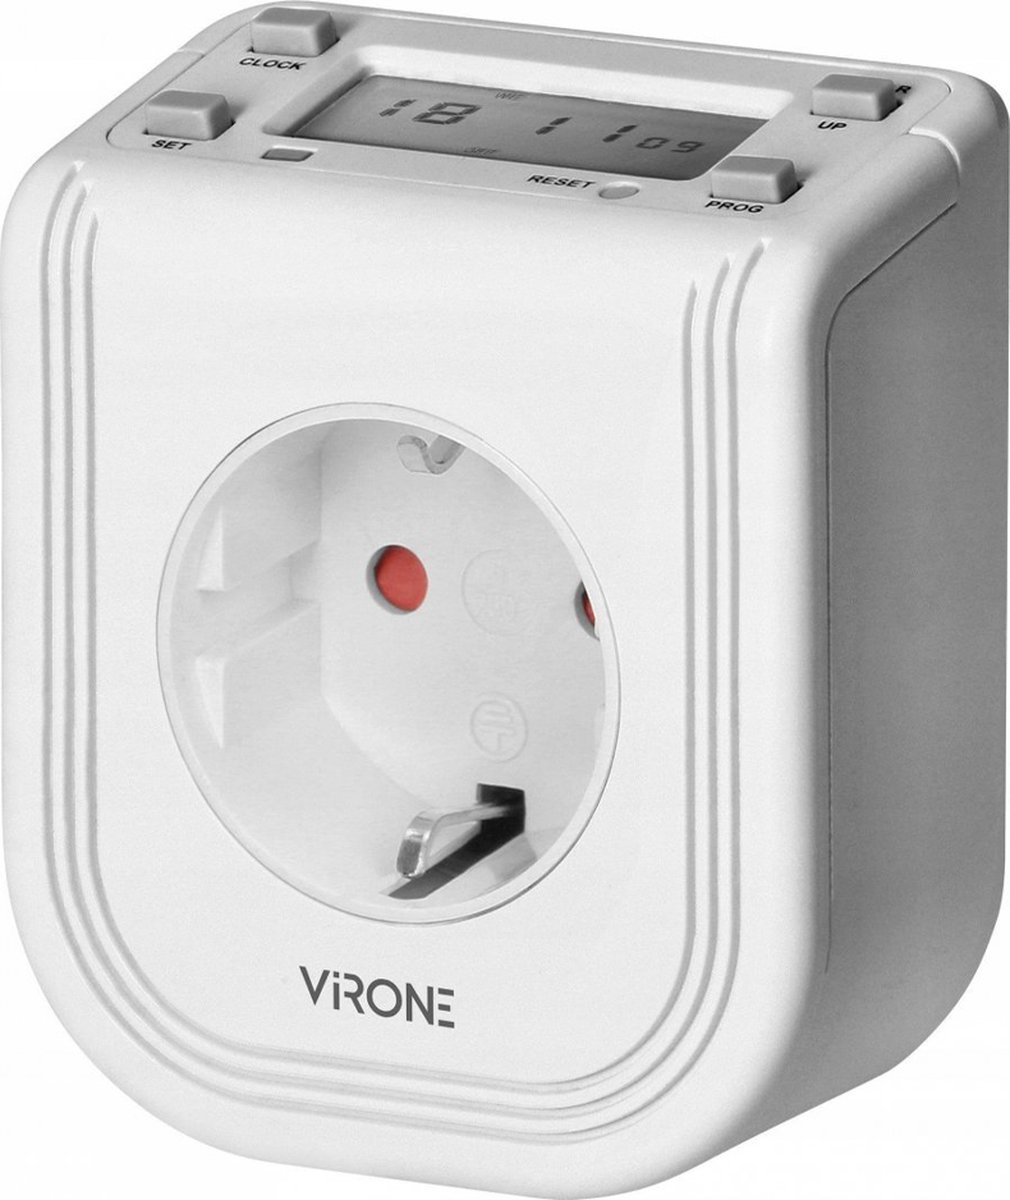 Virone - Elektronische Timer - 3680W